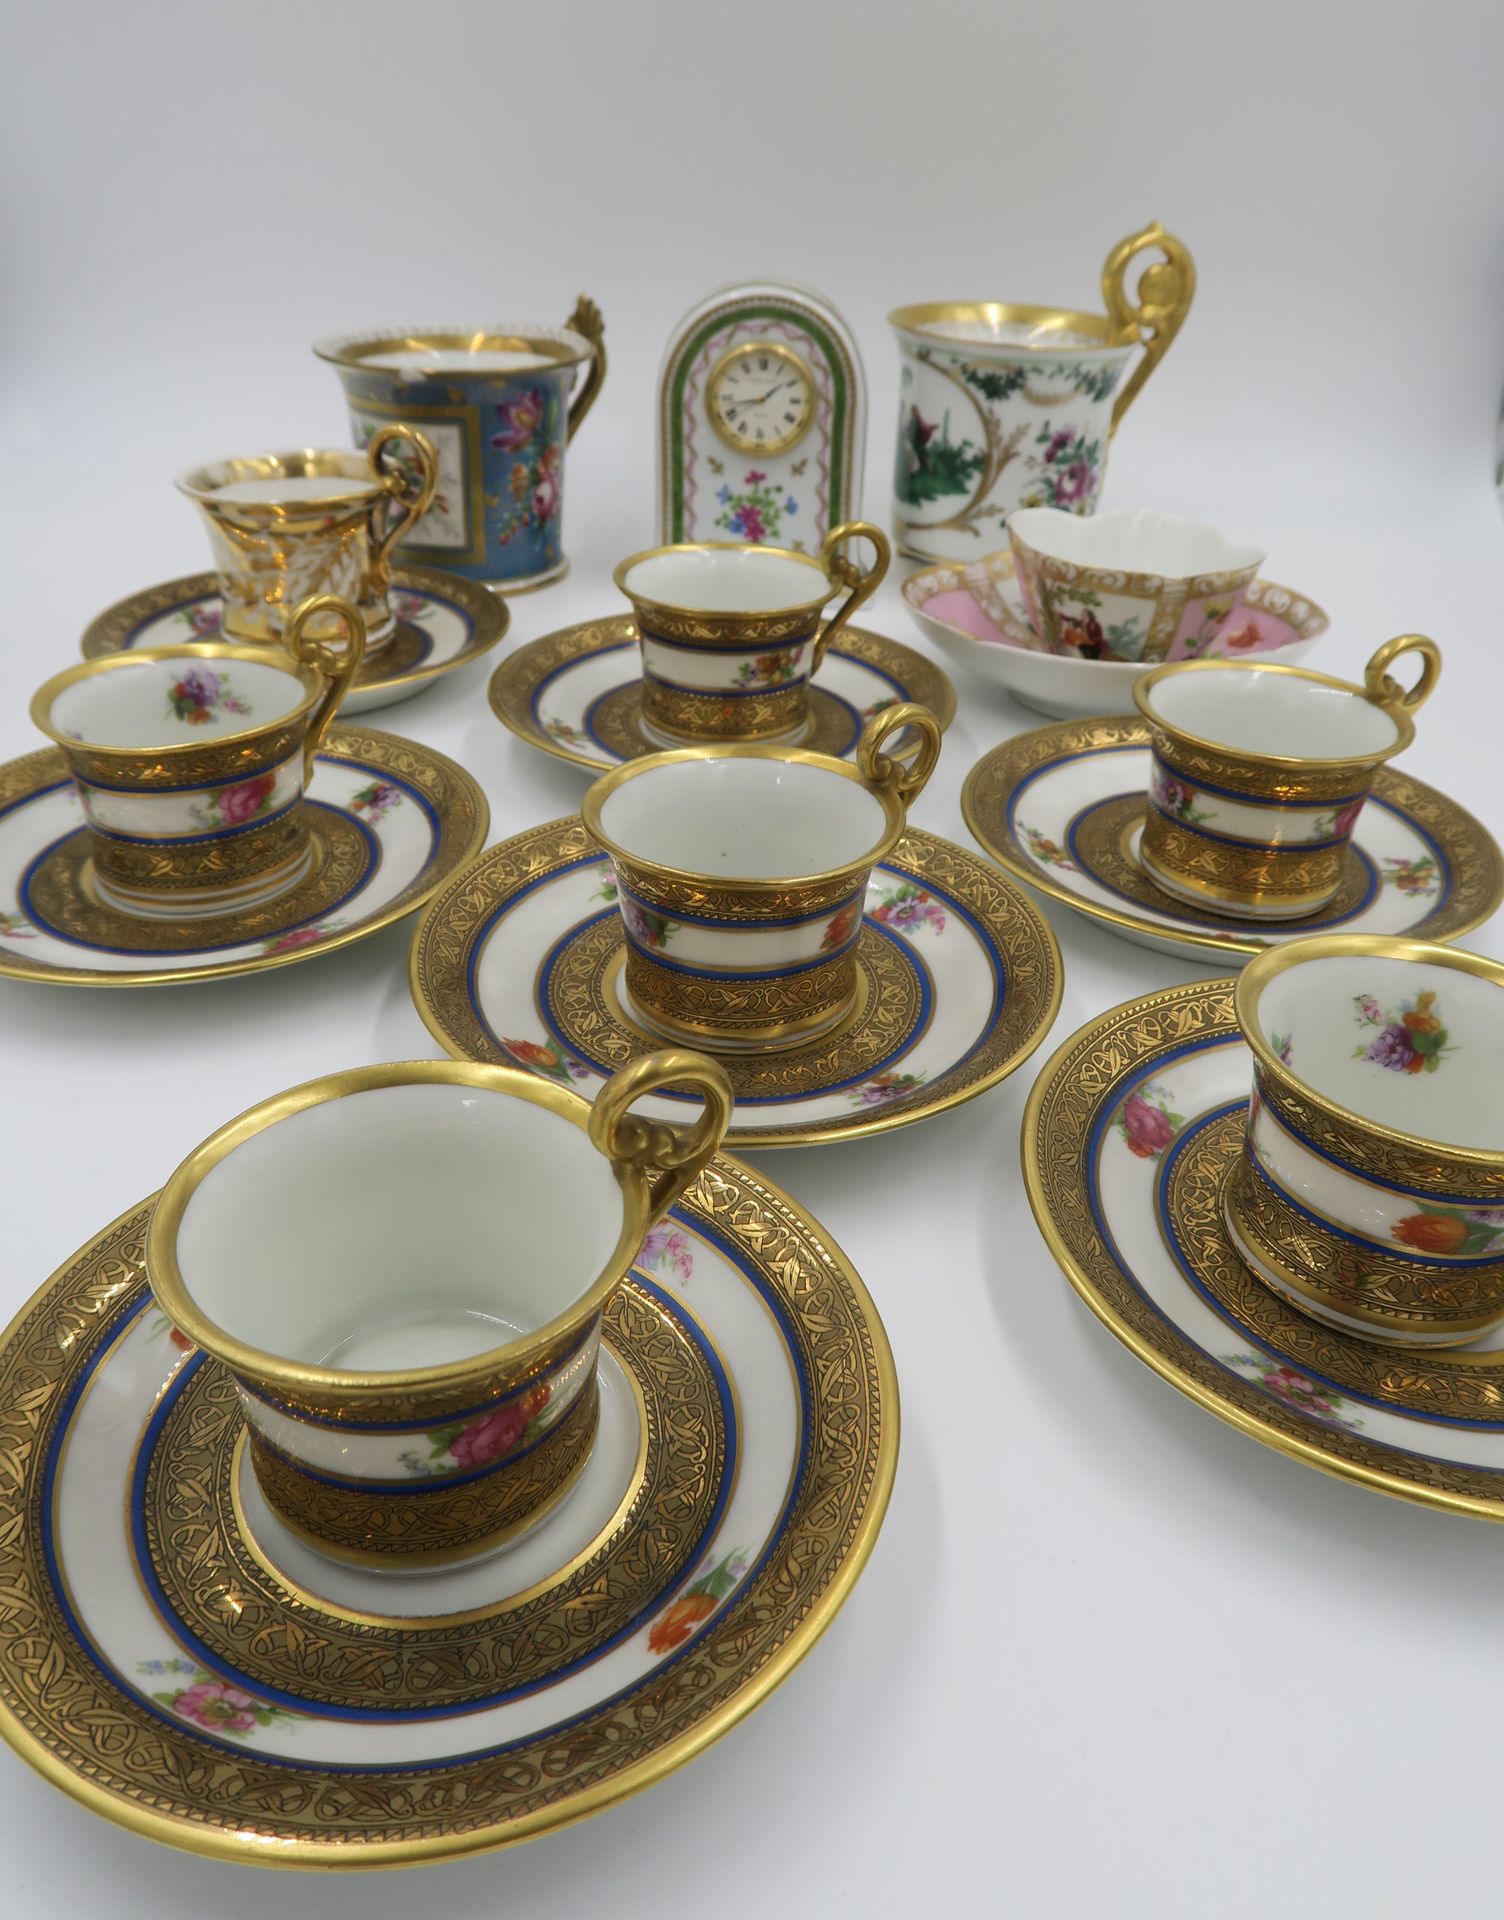 Null 瓷器摩卡套装，20世纪，有多色装饰和金色卷轴，一个另一型号的杯和碟，两个损坏的升杯，一个多叶形的杯子

附有一个哈维兰石英钟